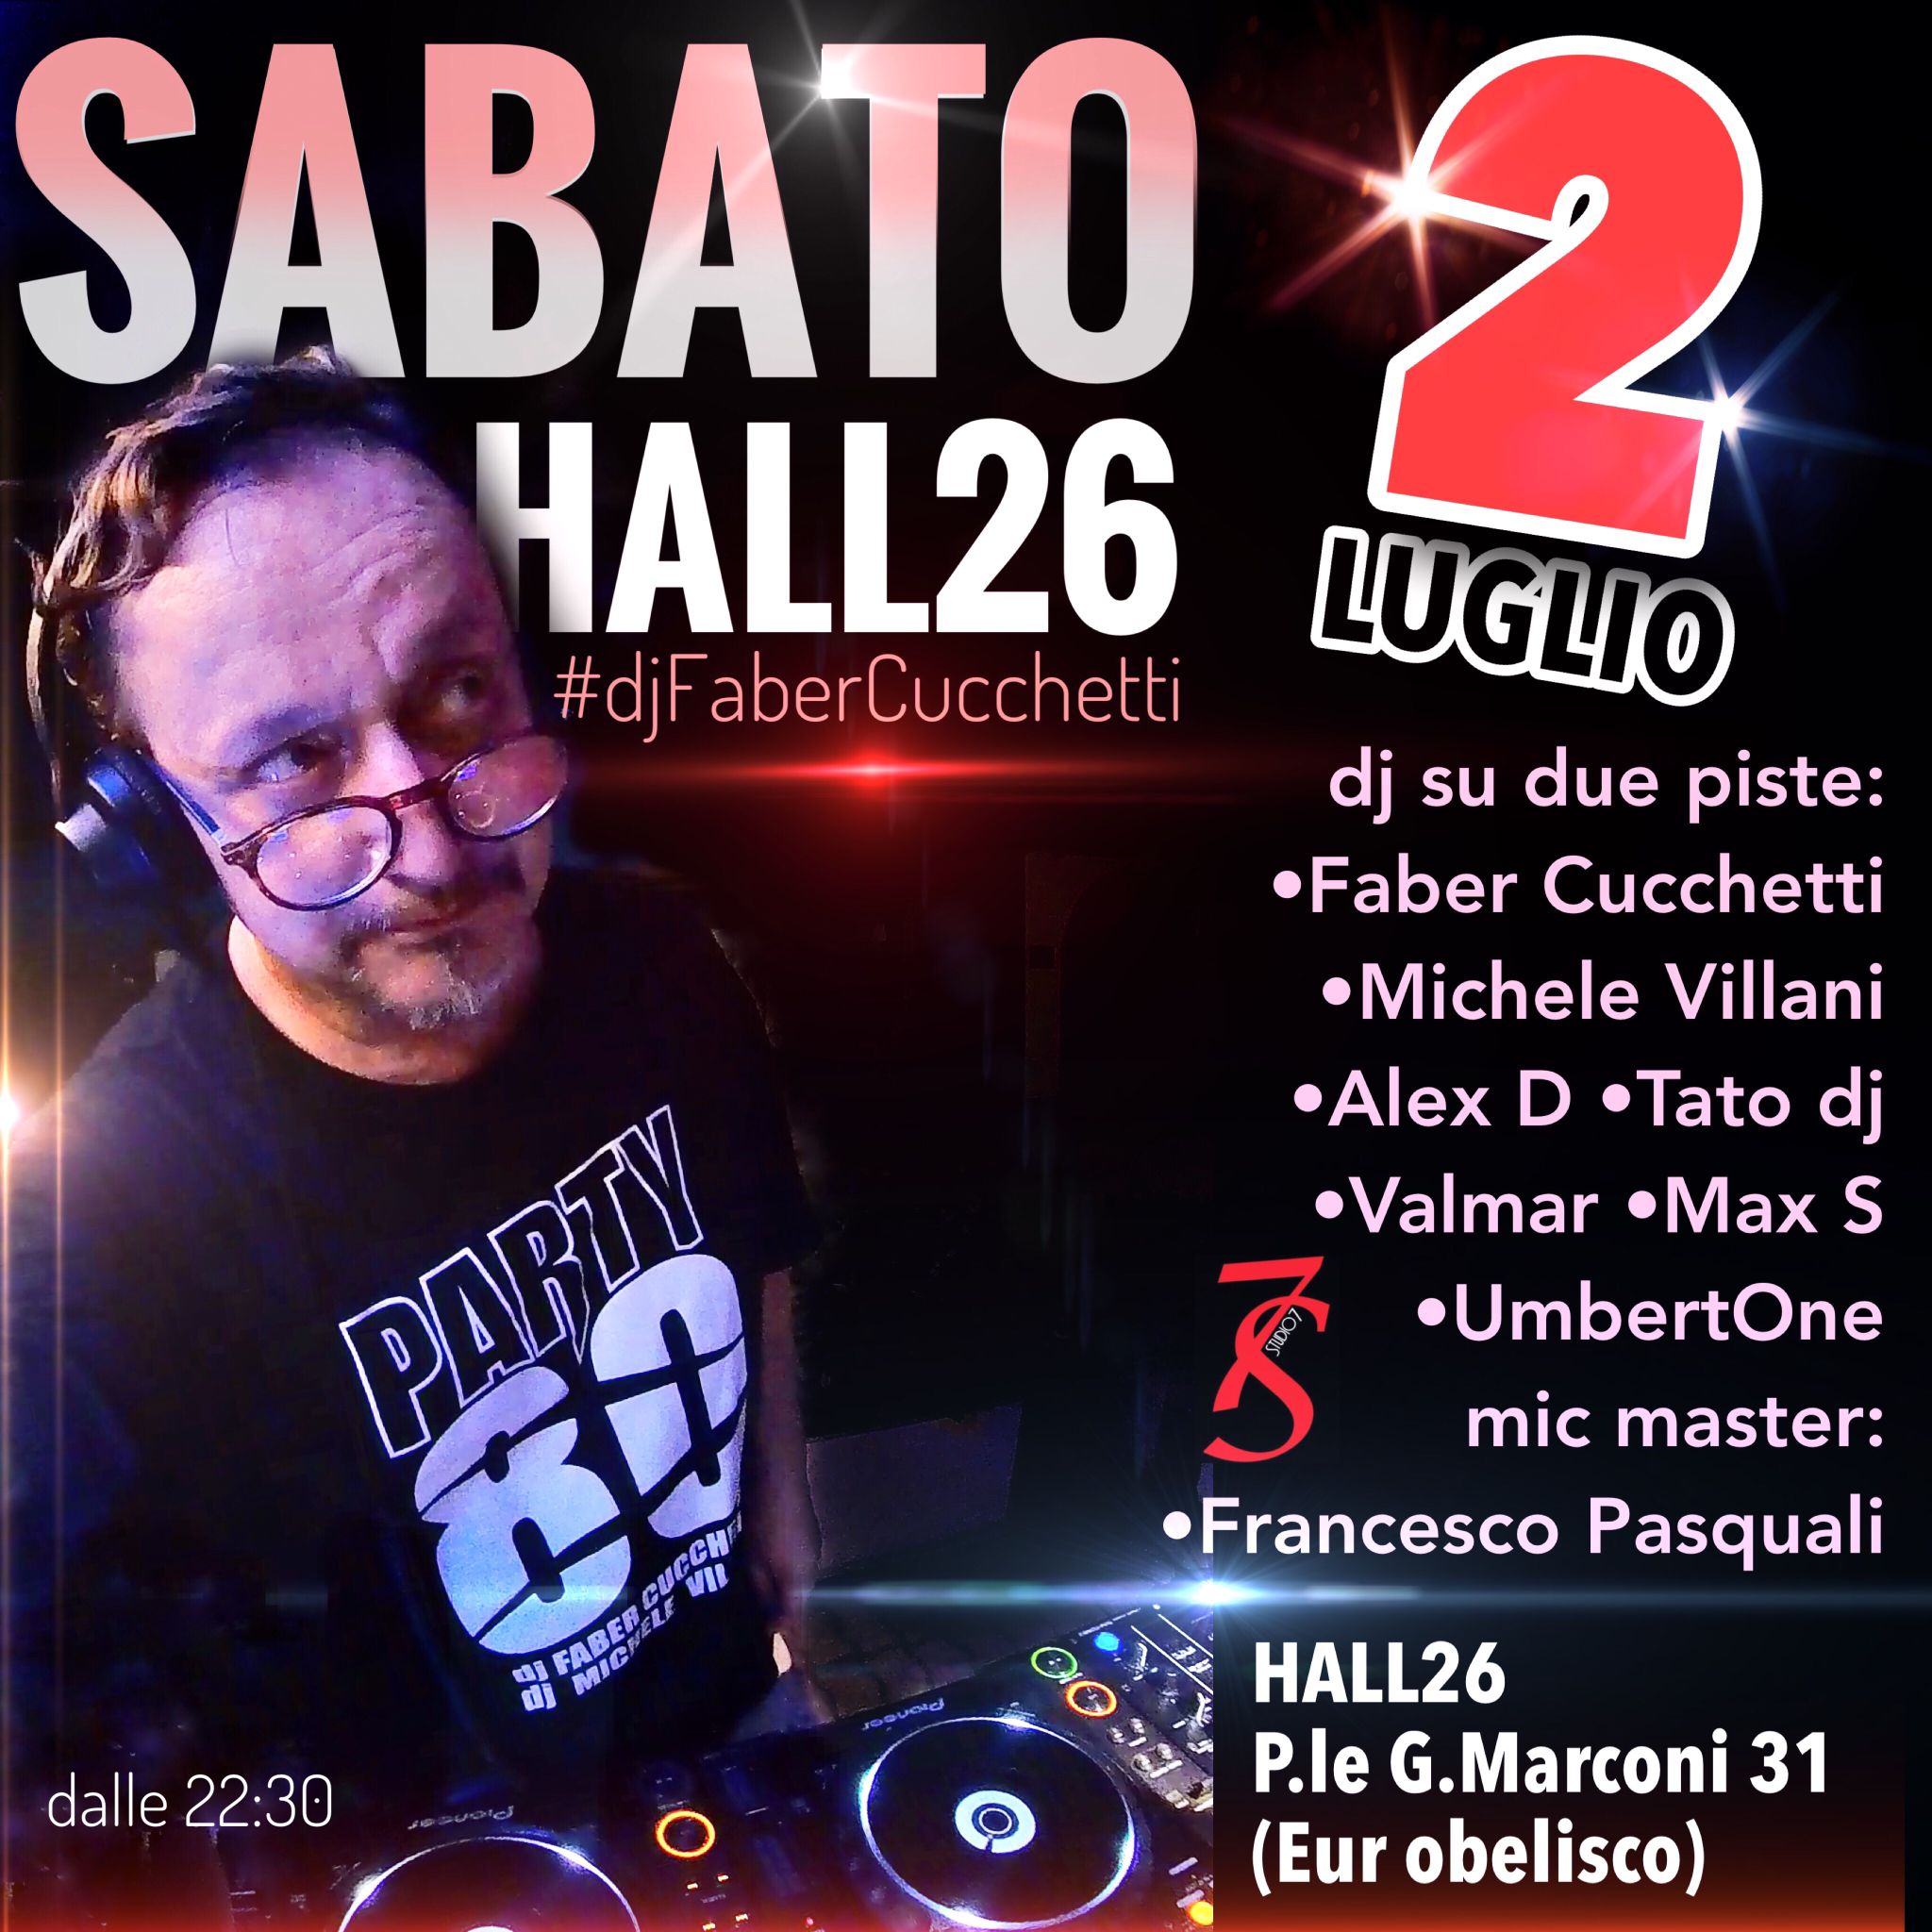 Faber Cucchetti dj - Hall 26 Roma sabato 2 luglio 2022